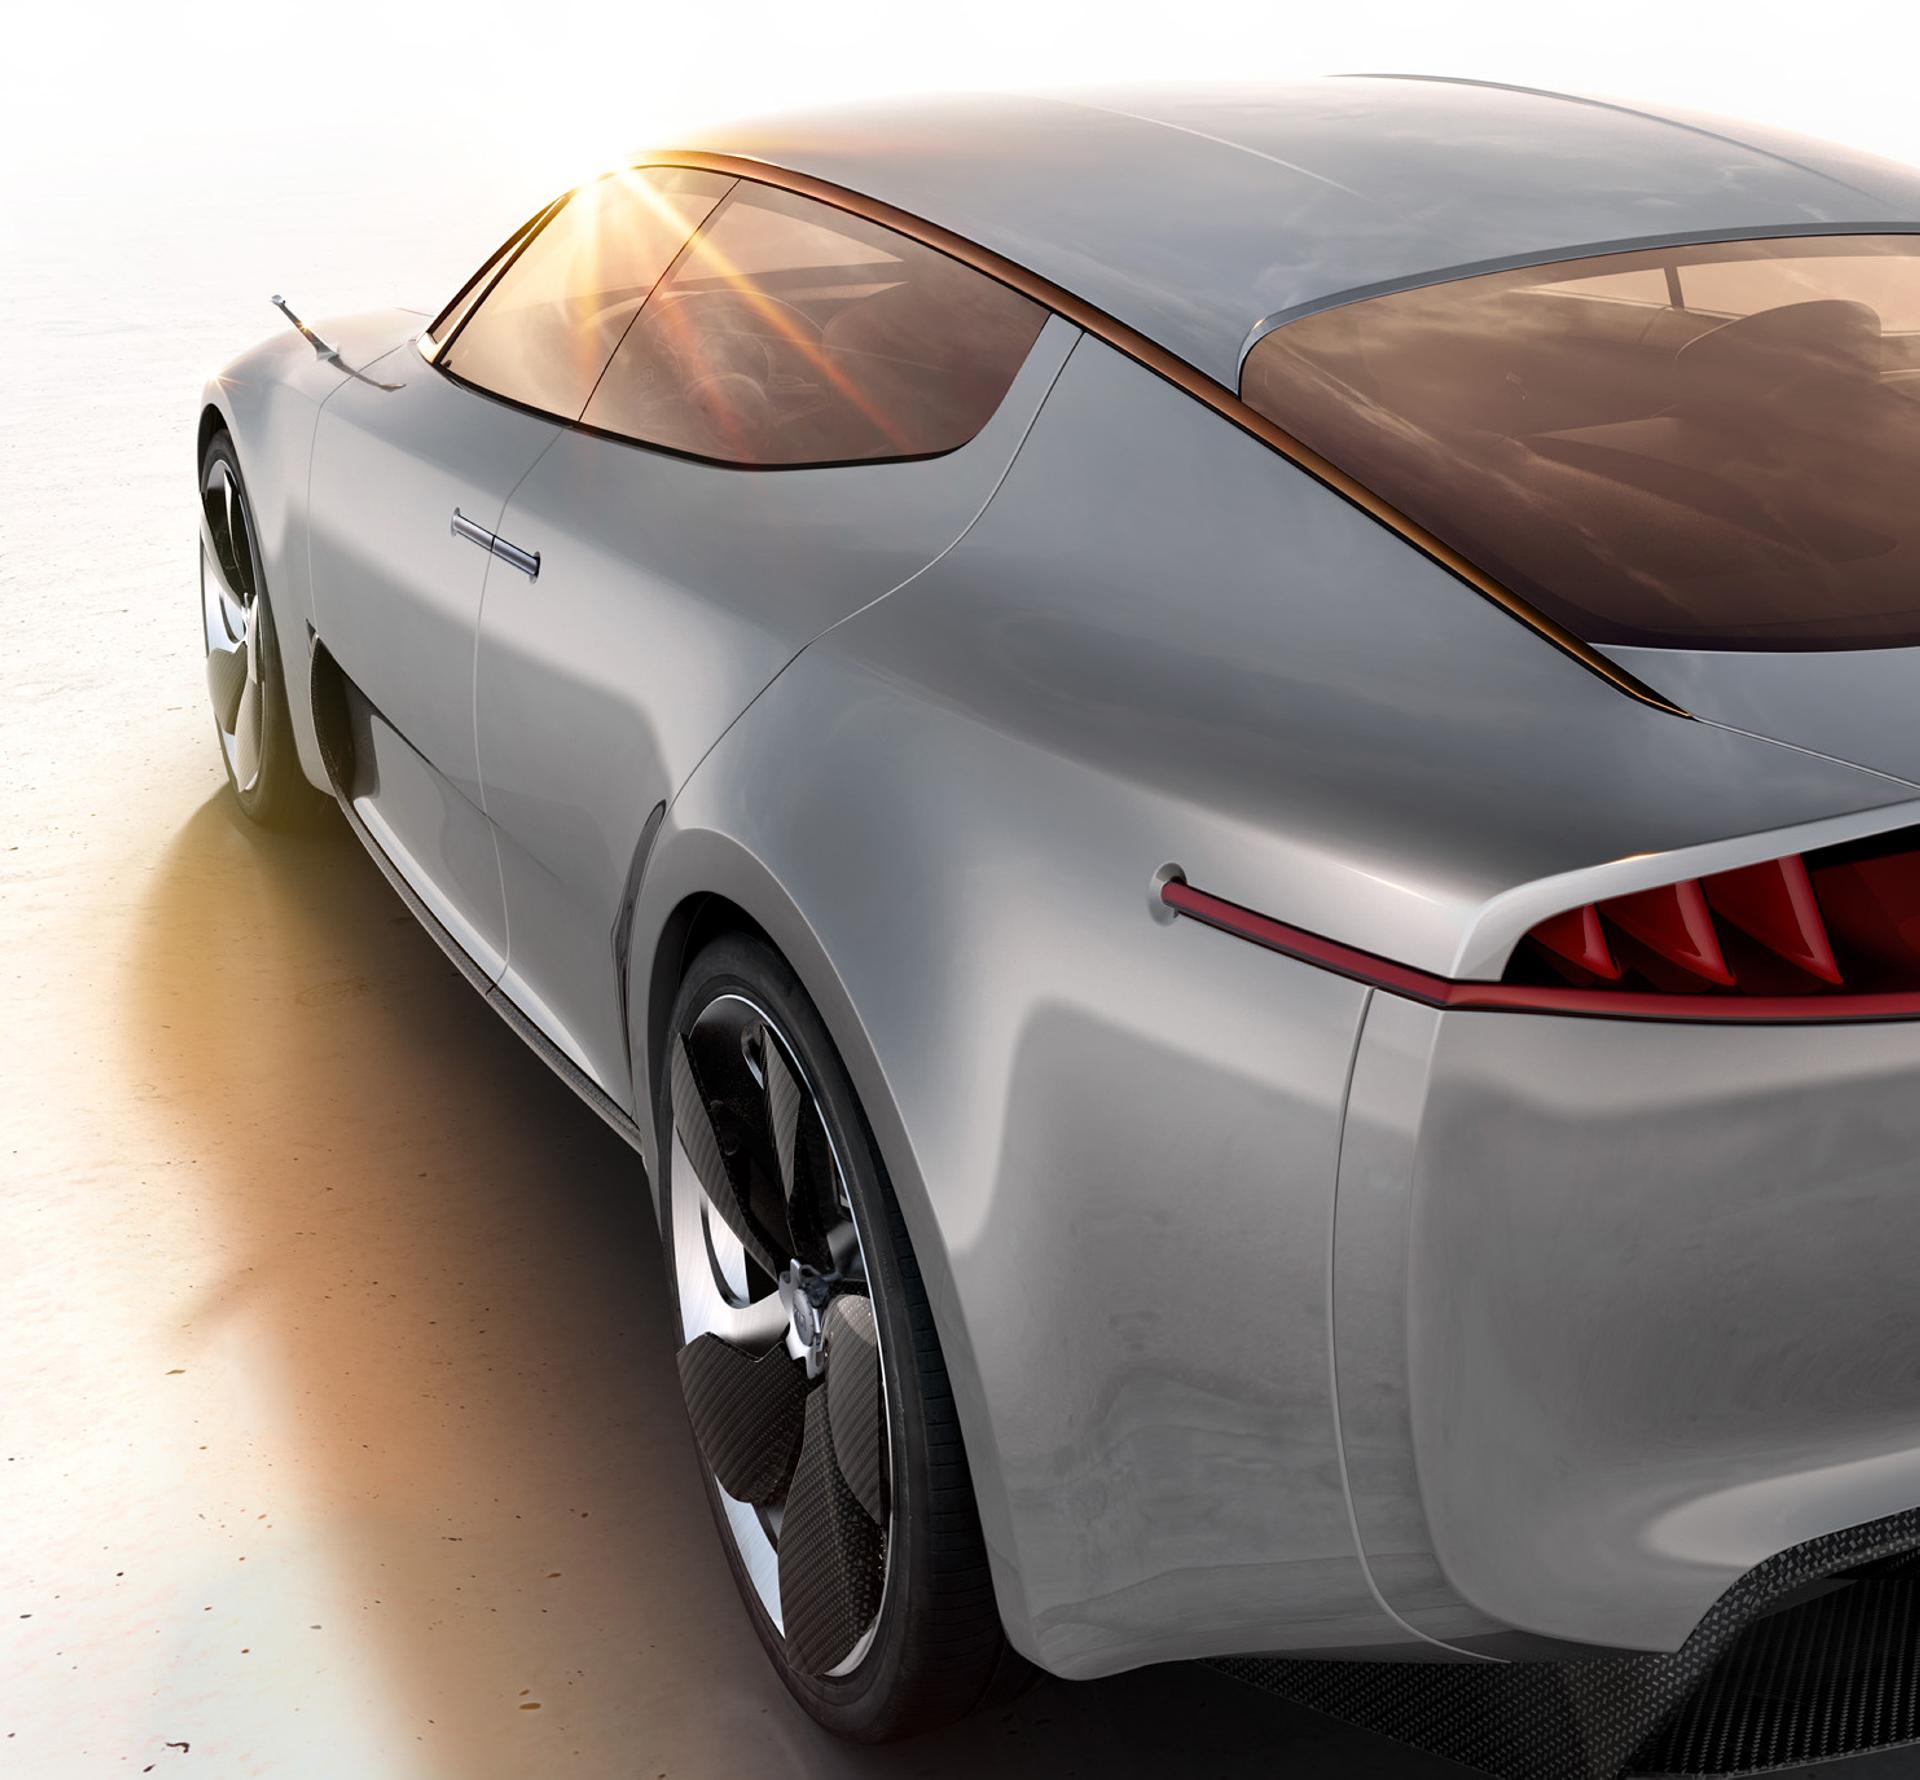 2012 Kia GT Concept